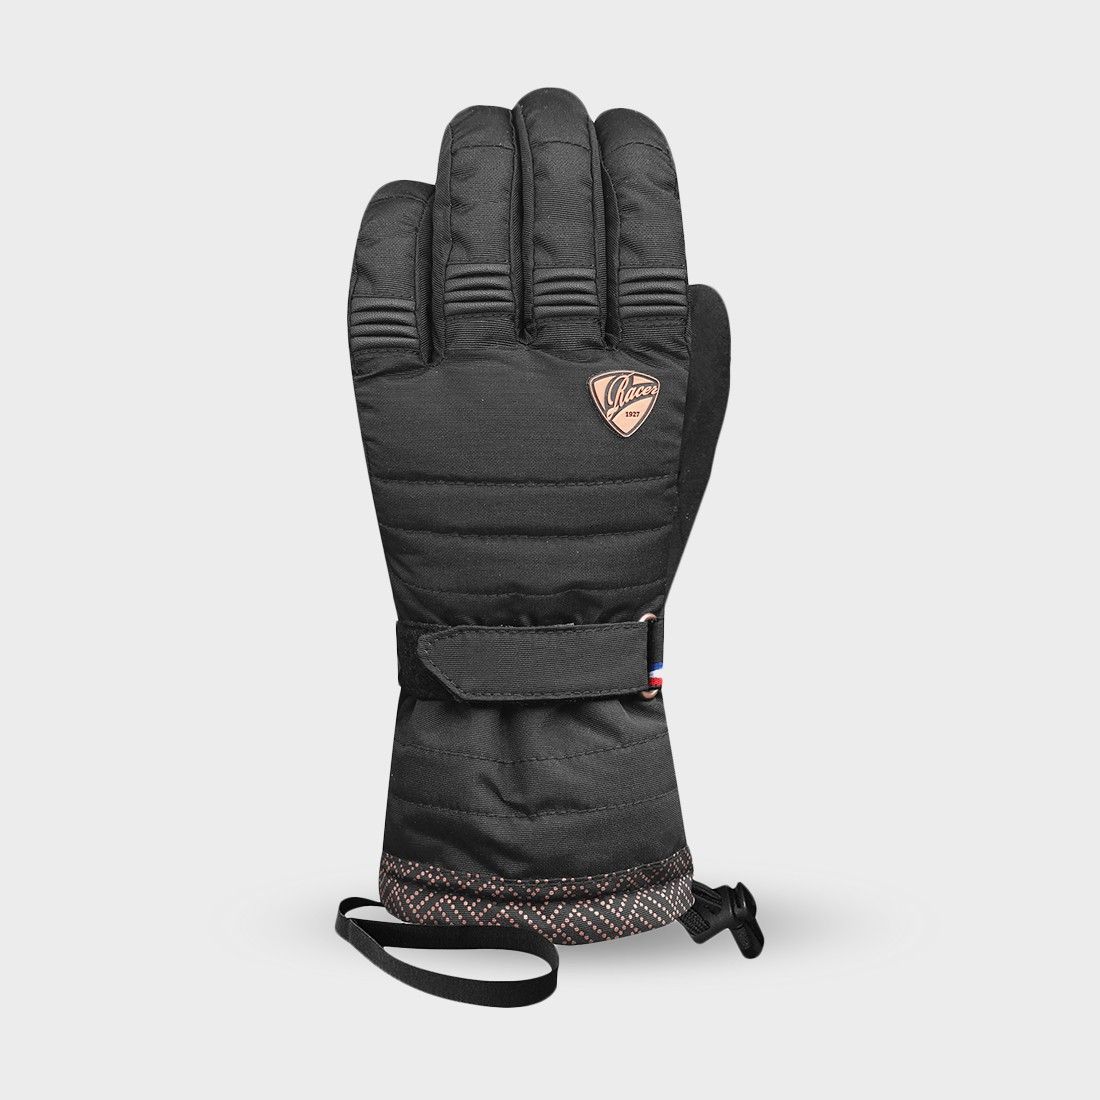 ALOMA 3 - スキー手袋